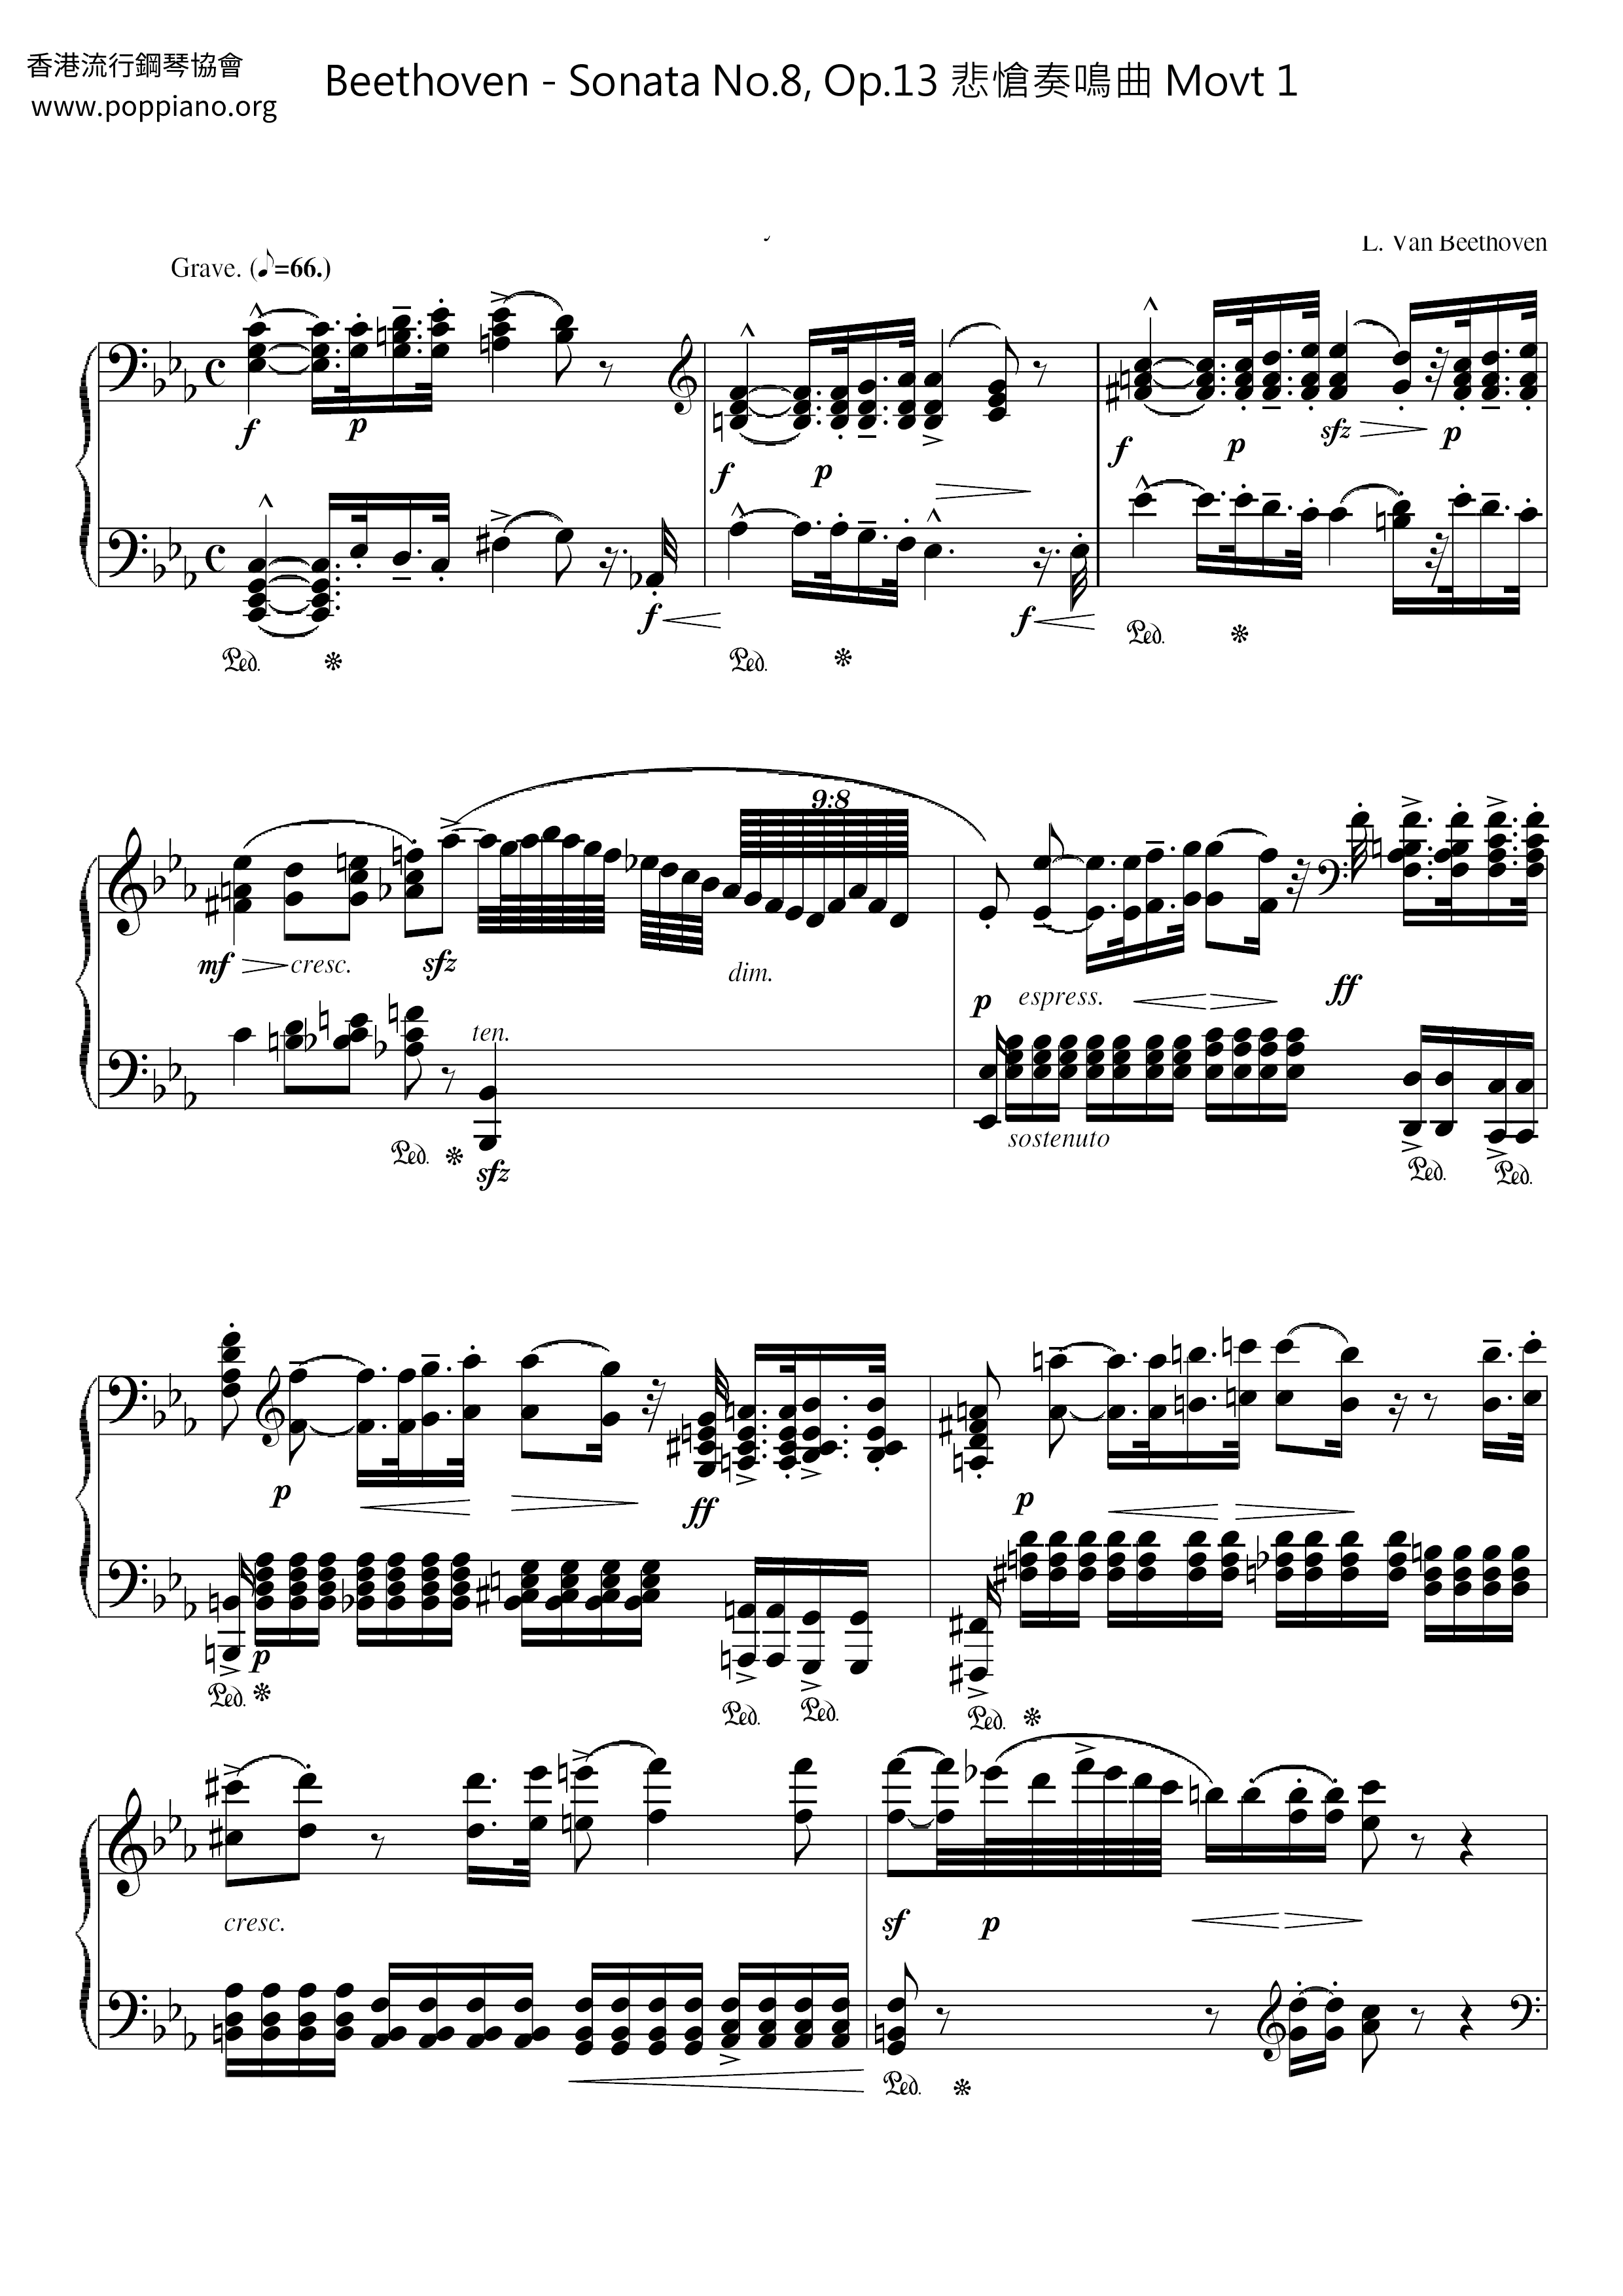 Sonata No.8, Op.13 Tragedy Sonata Movt 1 Score